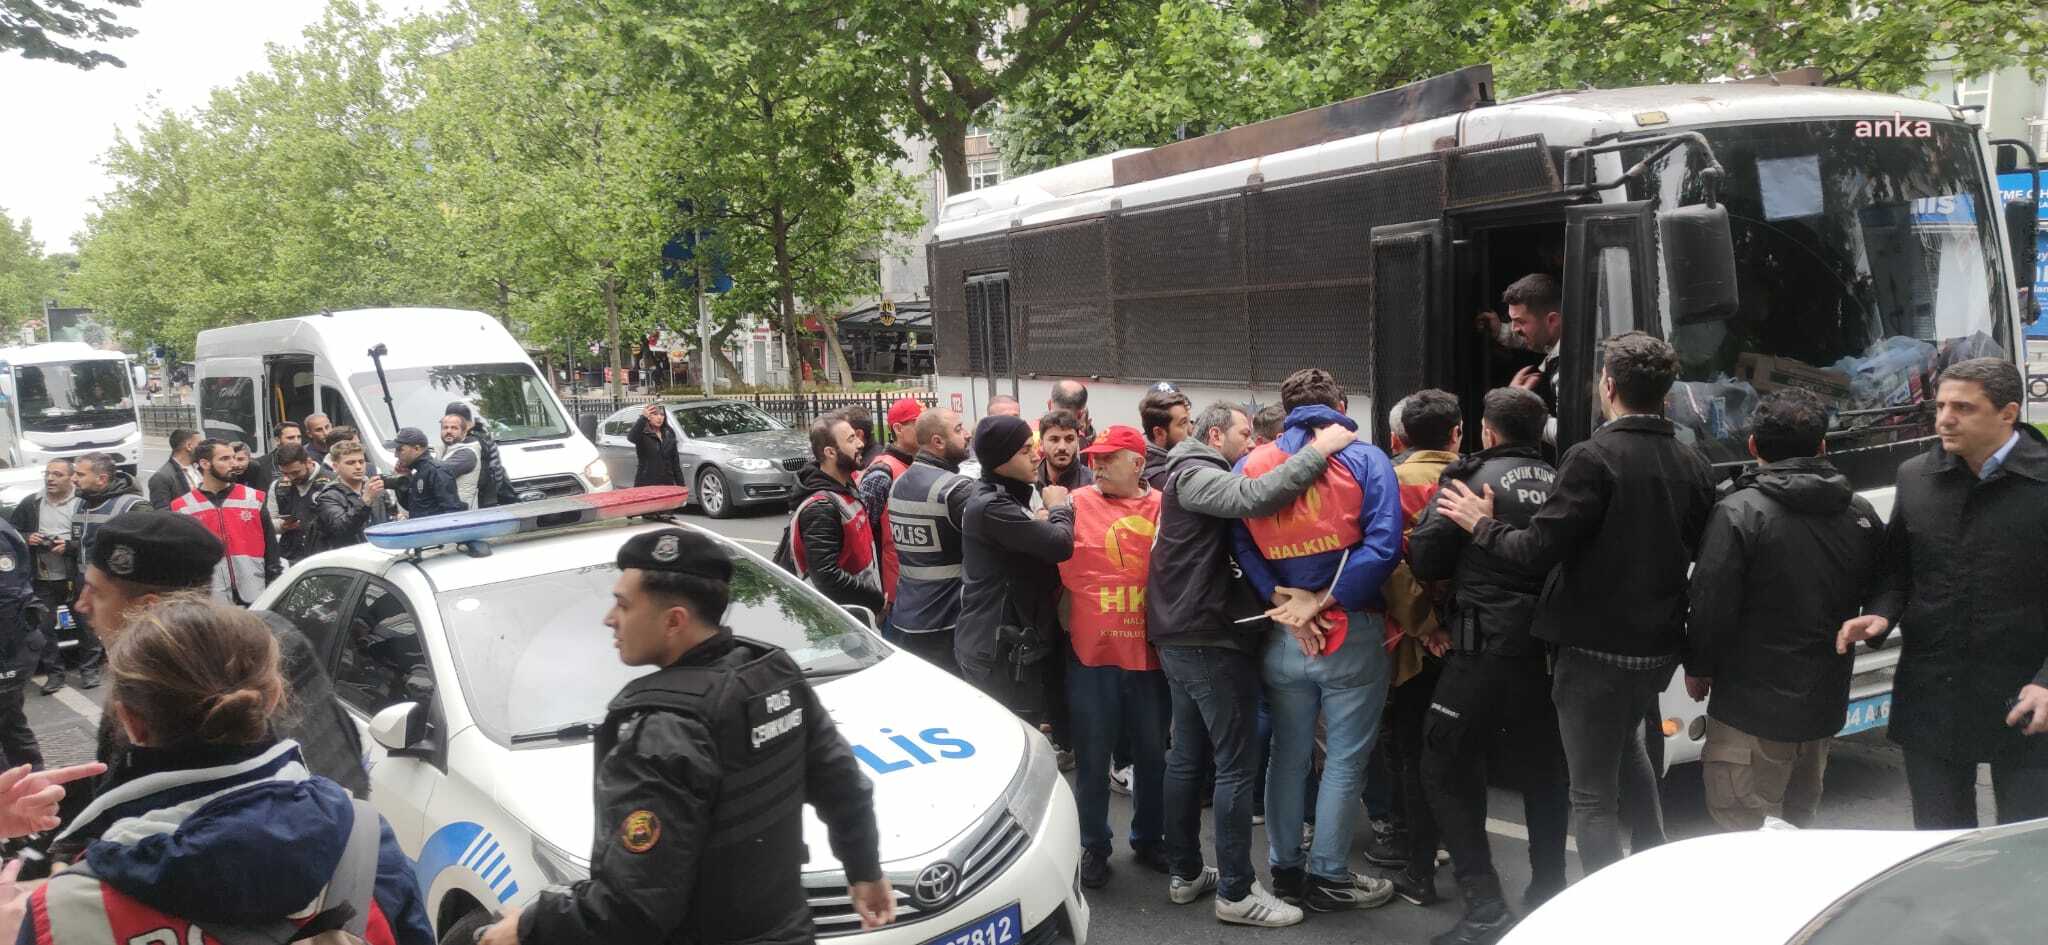 Beşiktaş'tan Taksim'e yürümek isteyen HKP’liler gözaltına alındı.